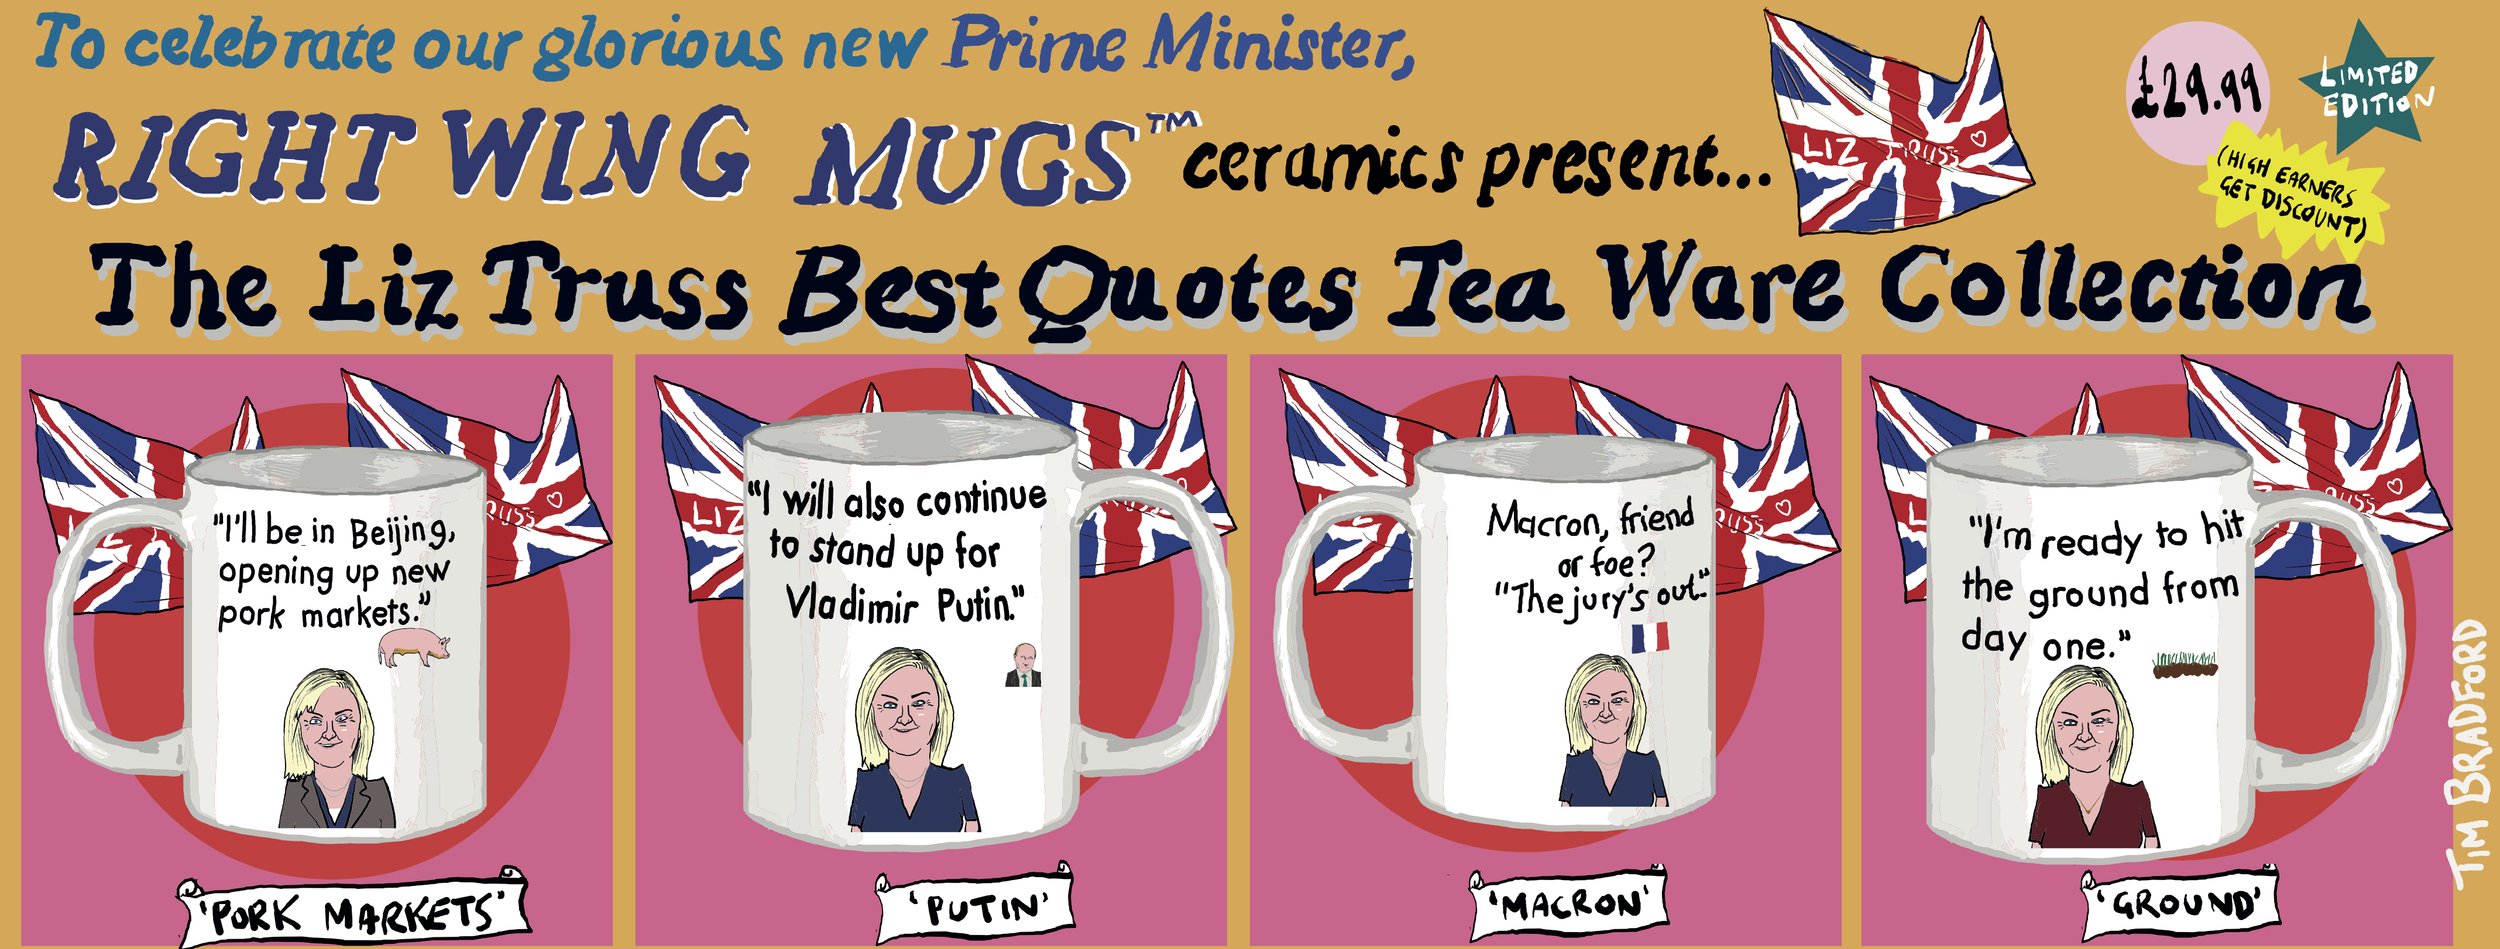 Liz Truss right wing mugs - 05/09/2022